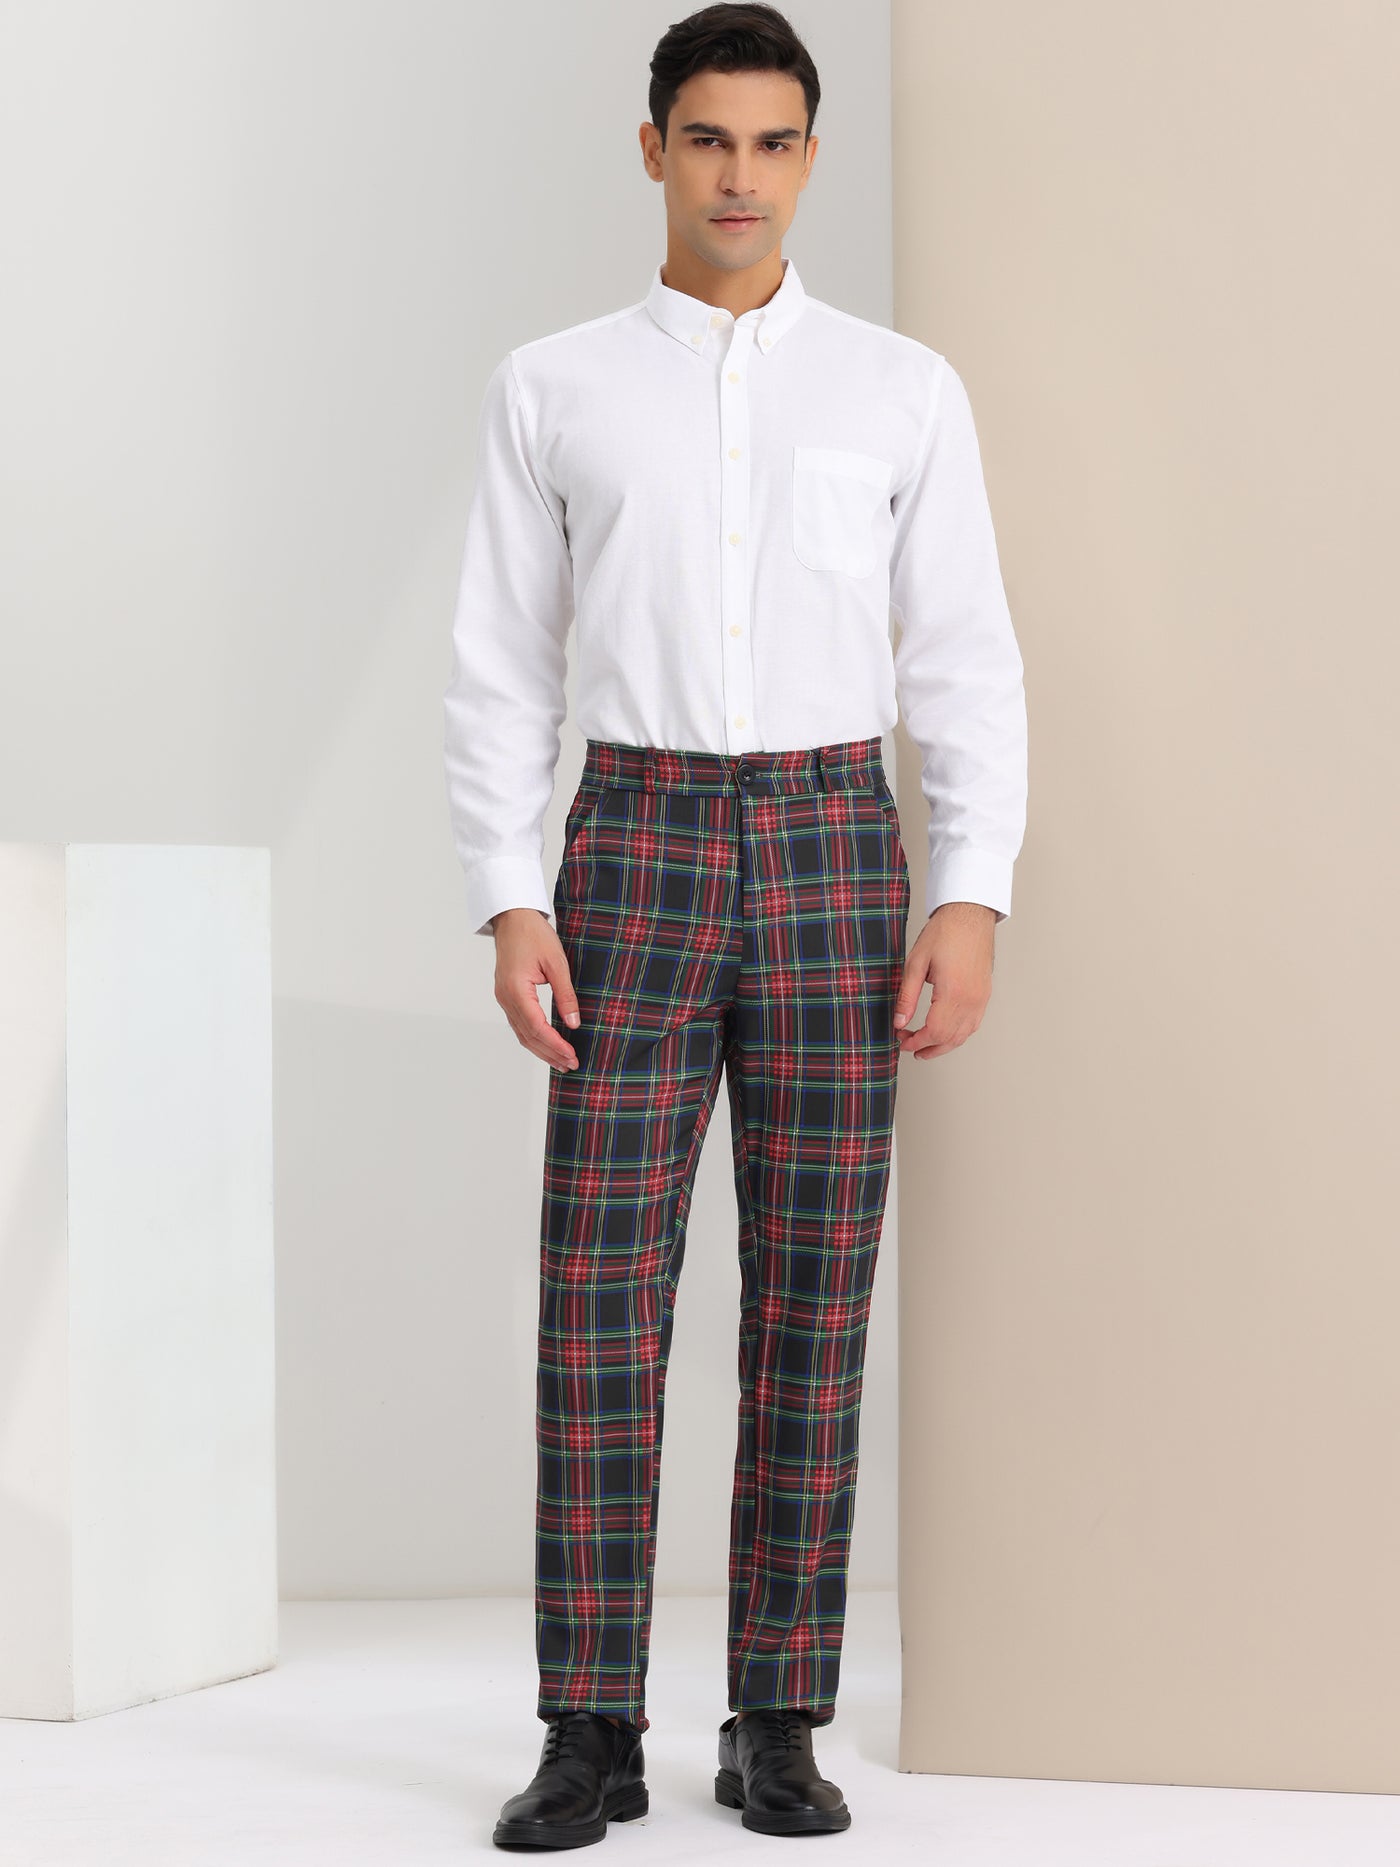 Bublédon Formal Check Business Trousers Plaid Dress Pants